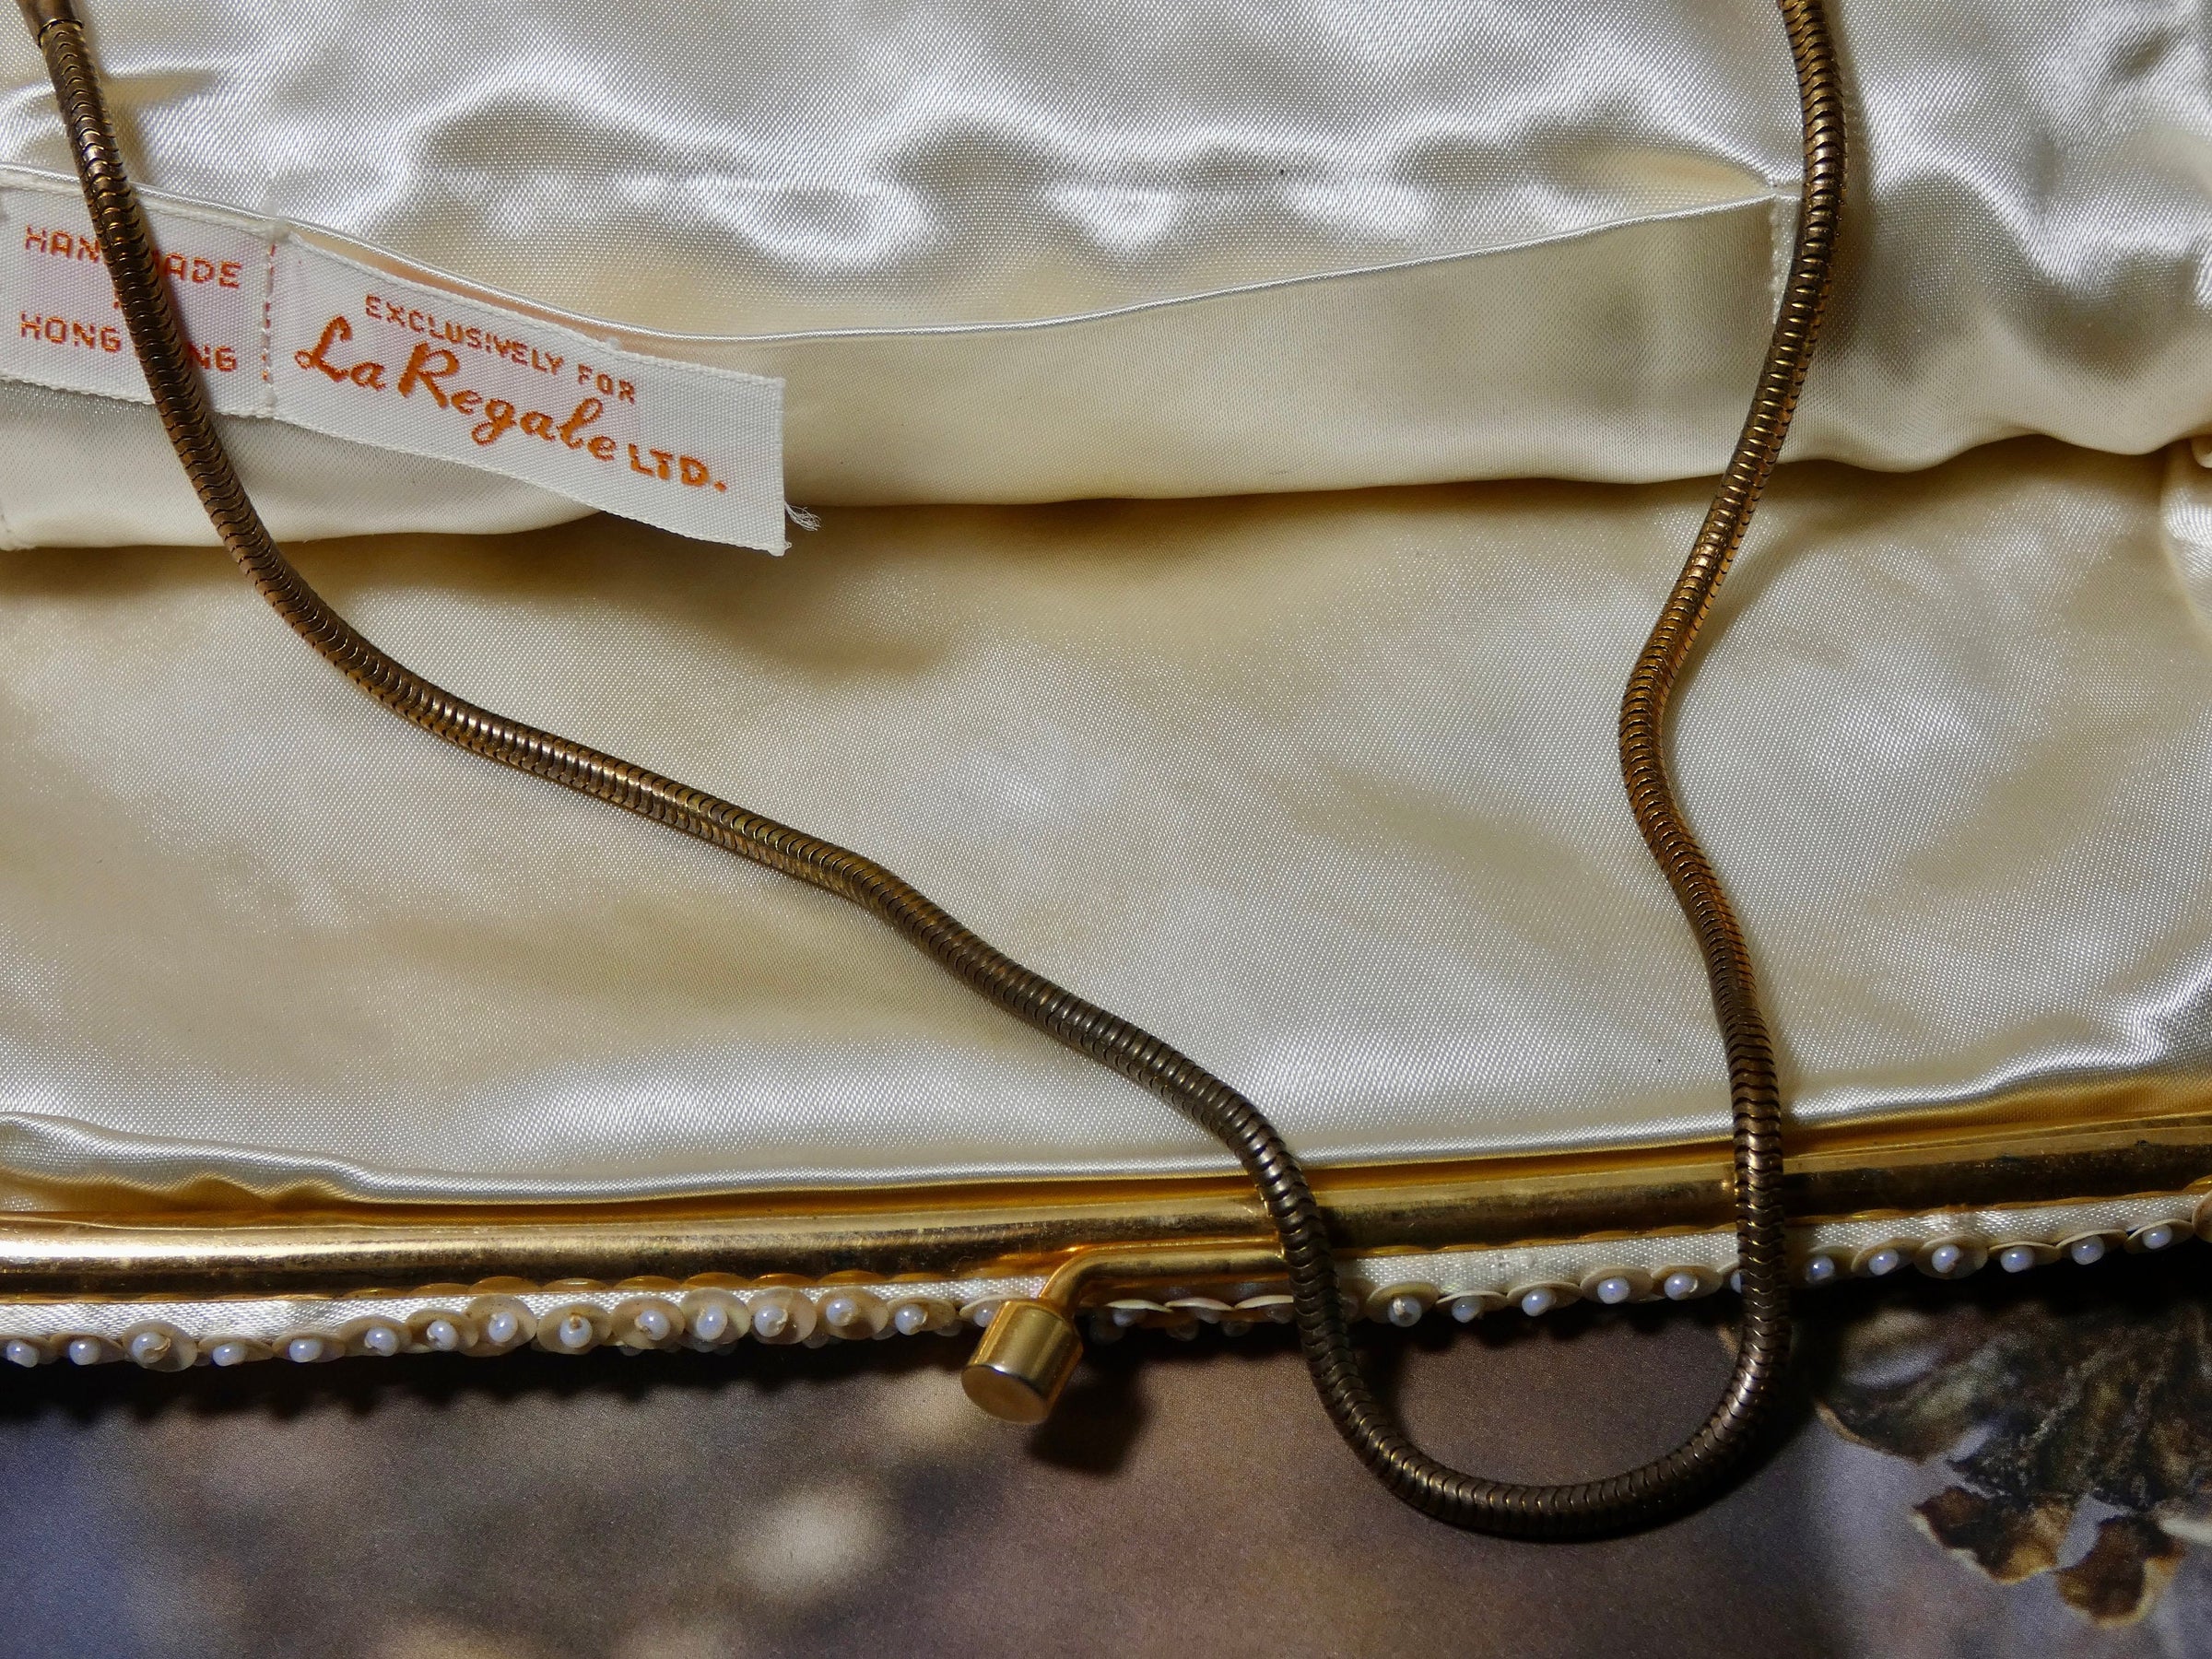 La Regale Vintage Handbag